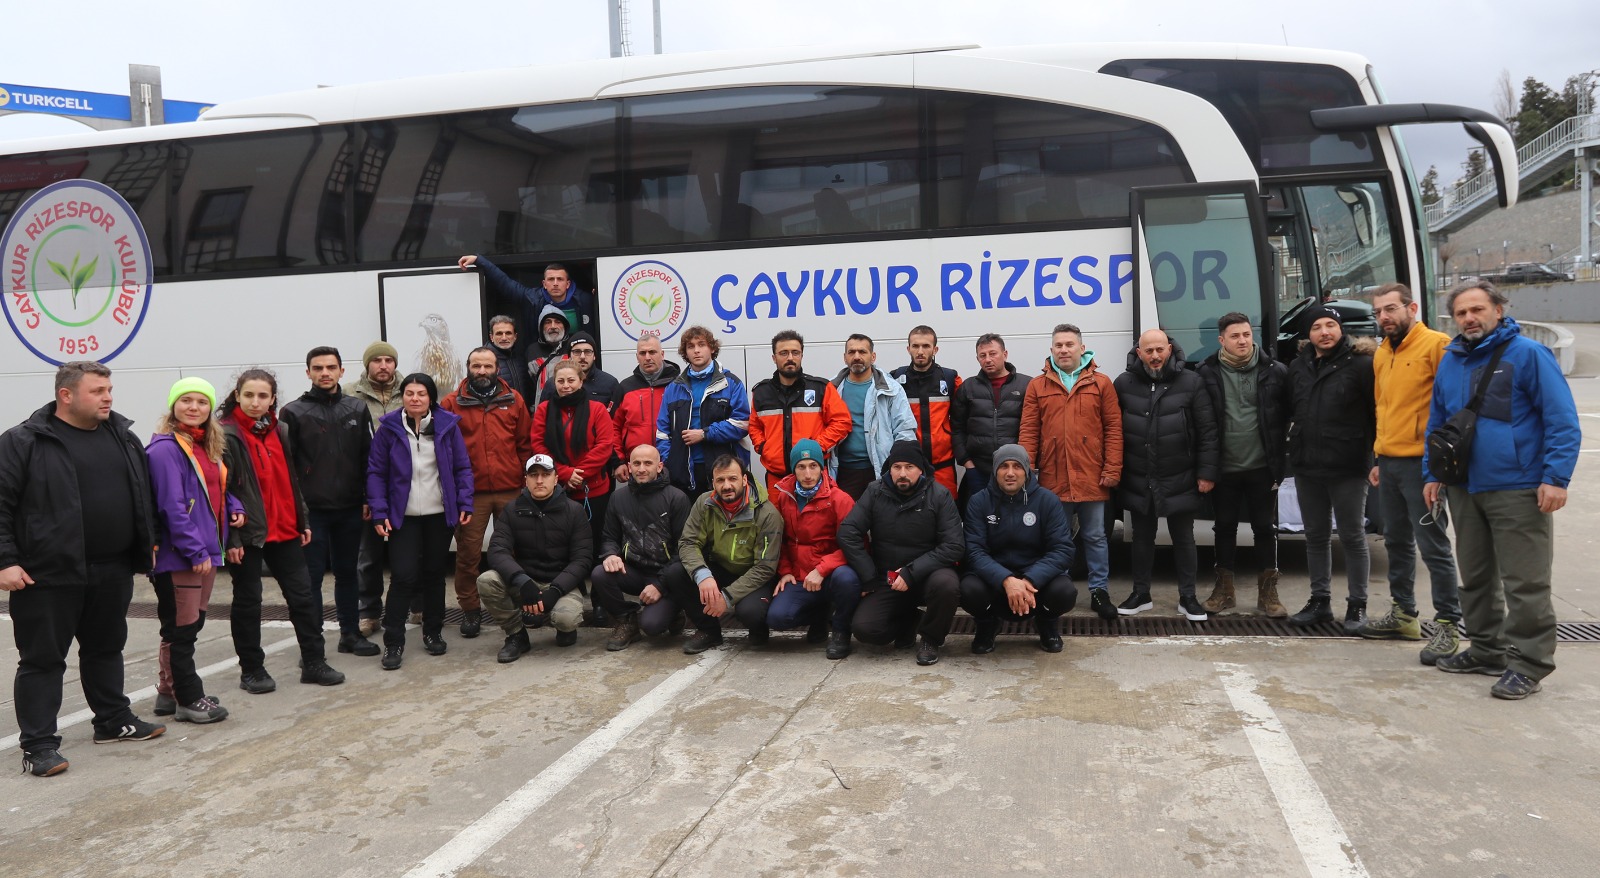 Rize Arama Kurtarma Ekibi (RİKE) Gaziantep’e yardım eli uzatmak için yola çıktı.